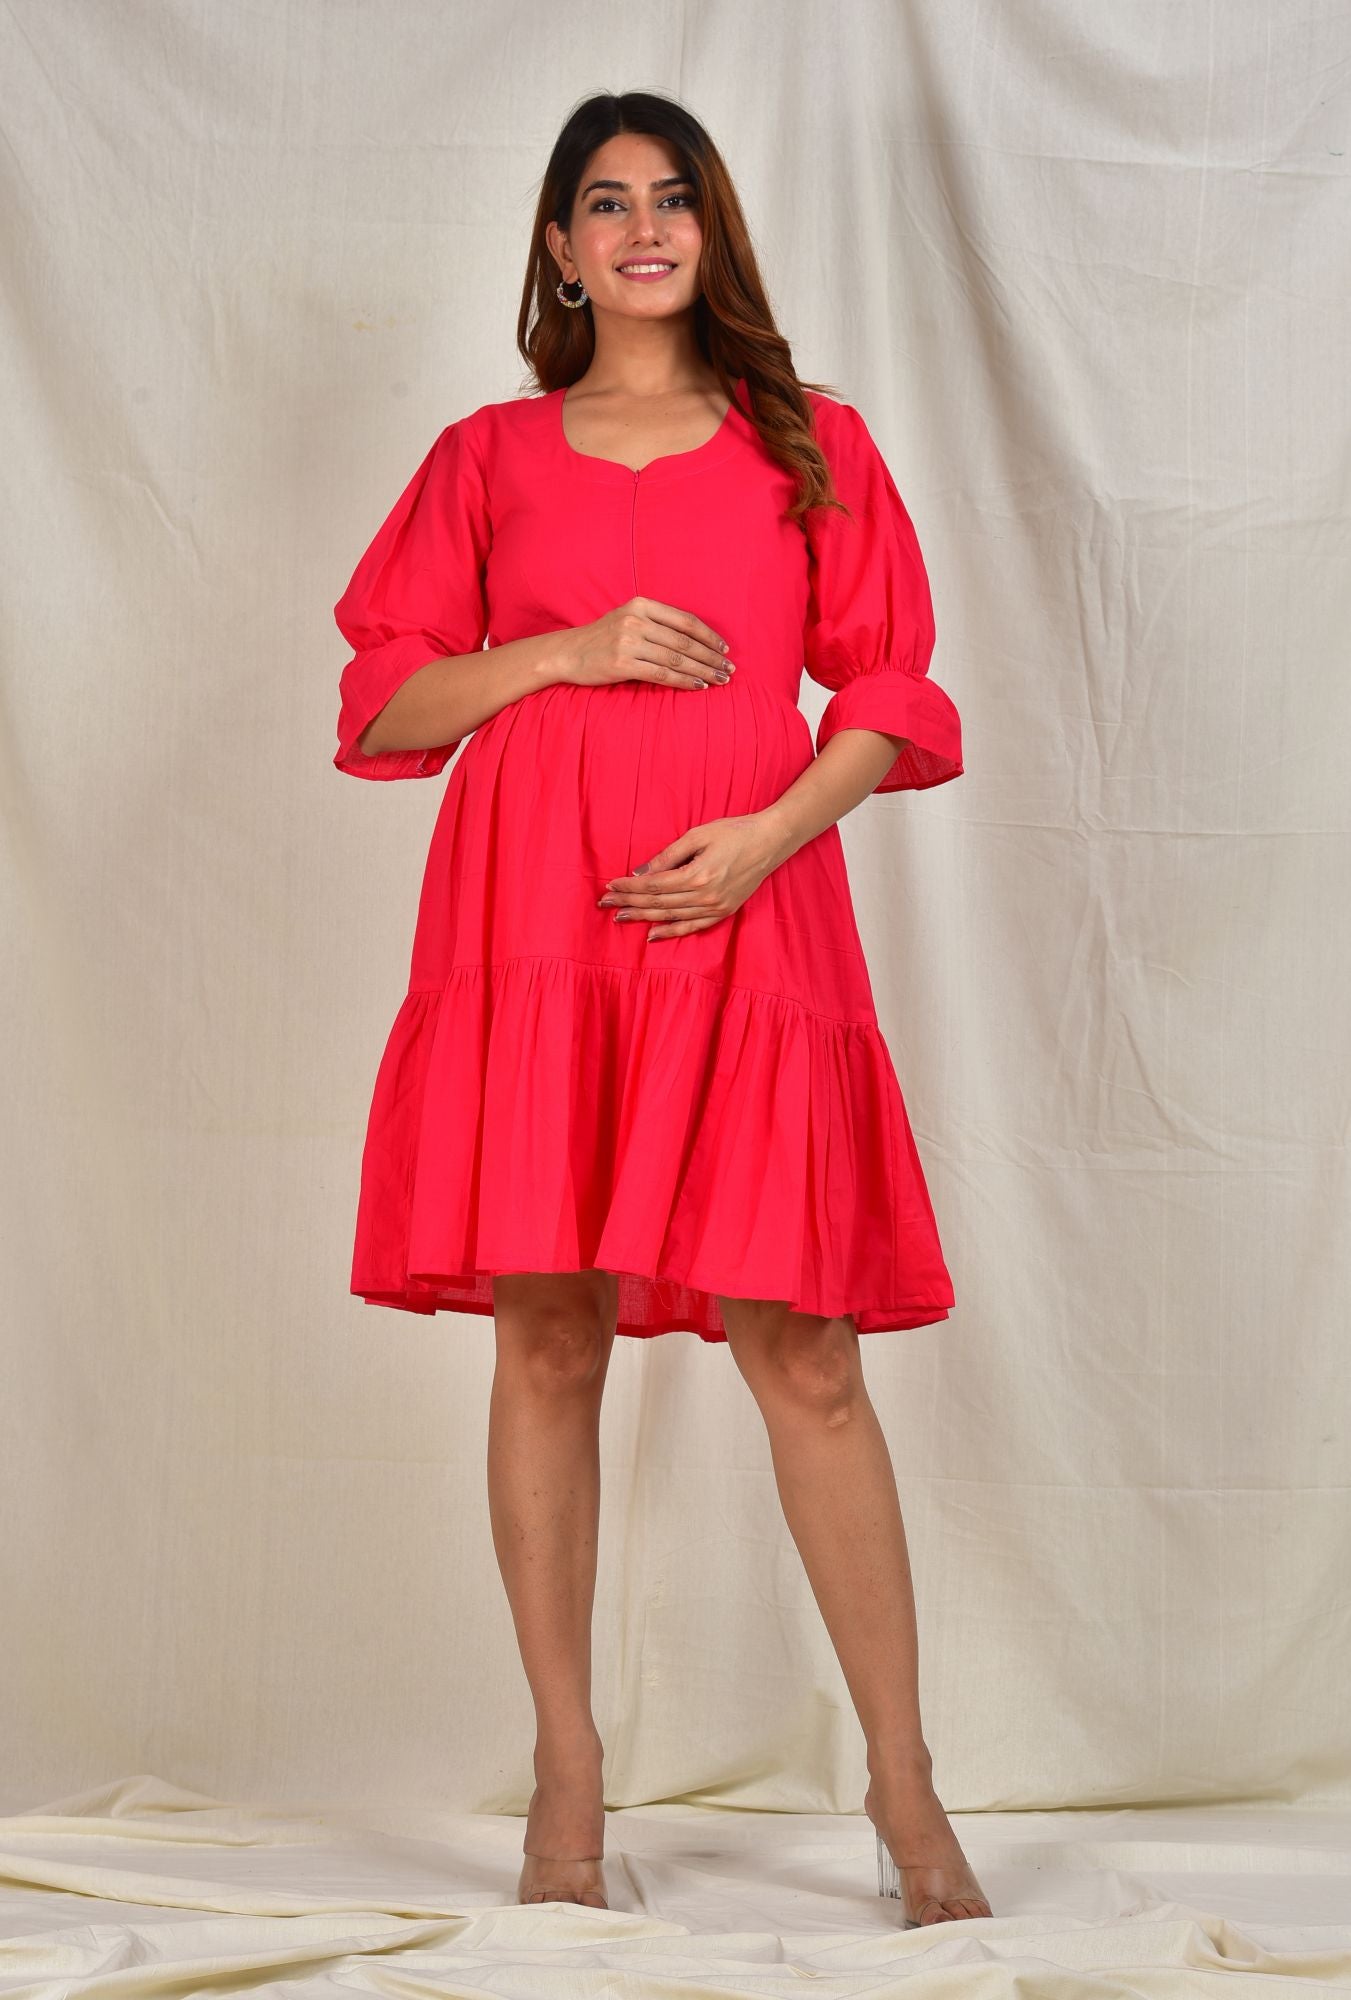 Rasik Maternity Short Dress For Feeding